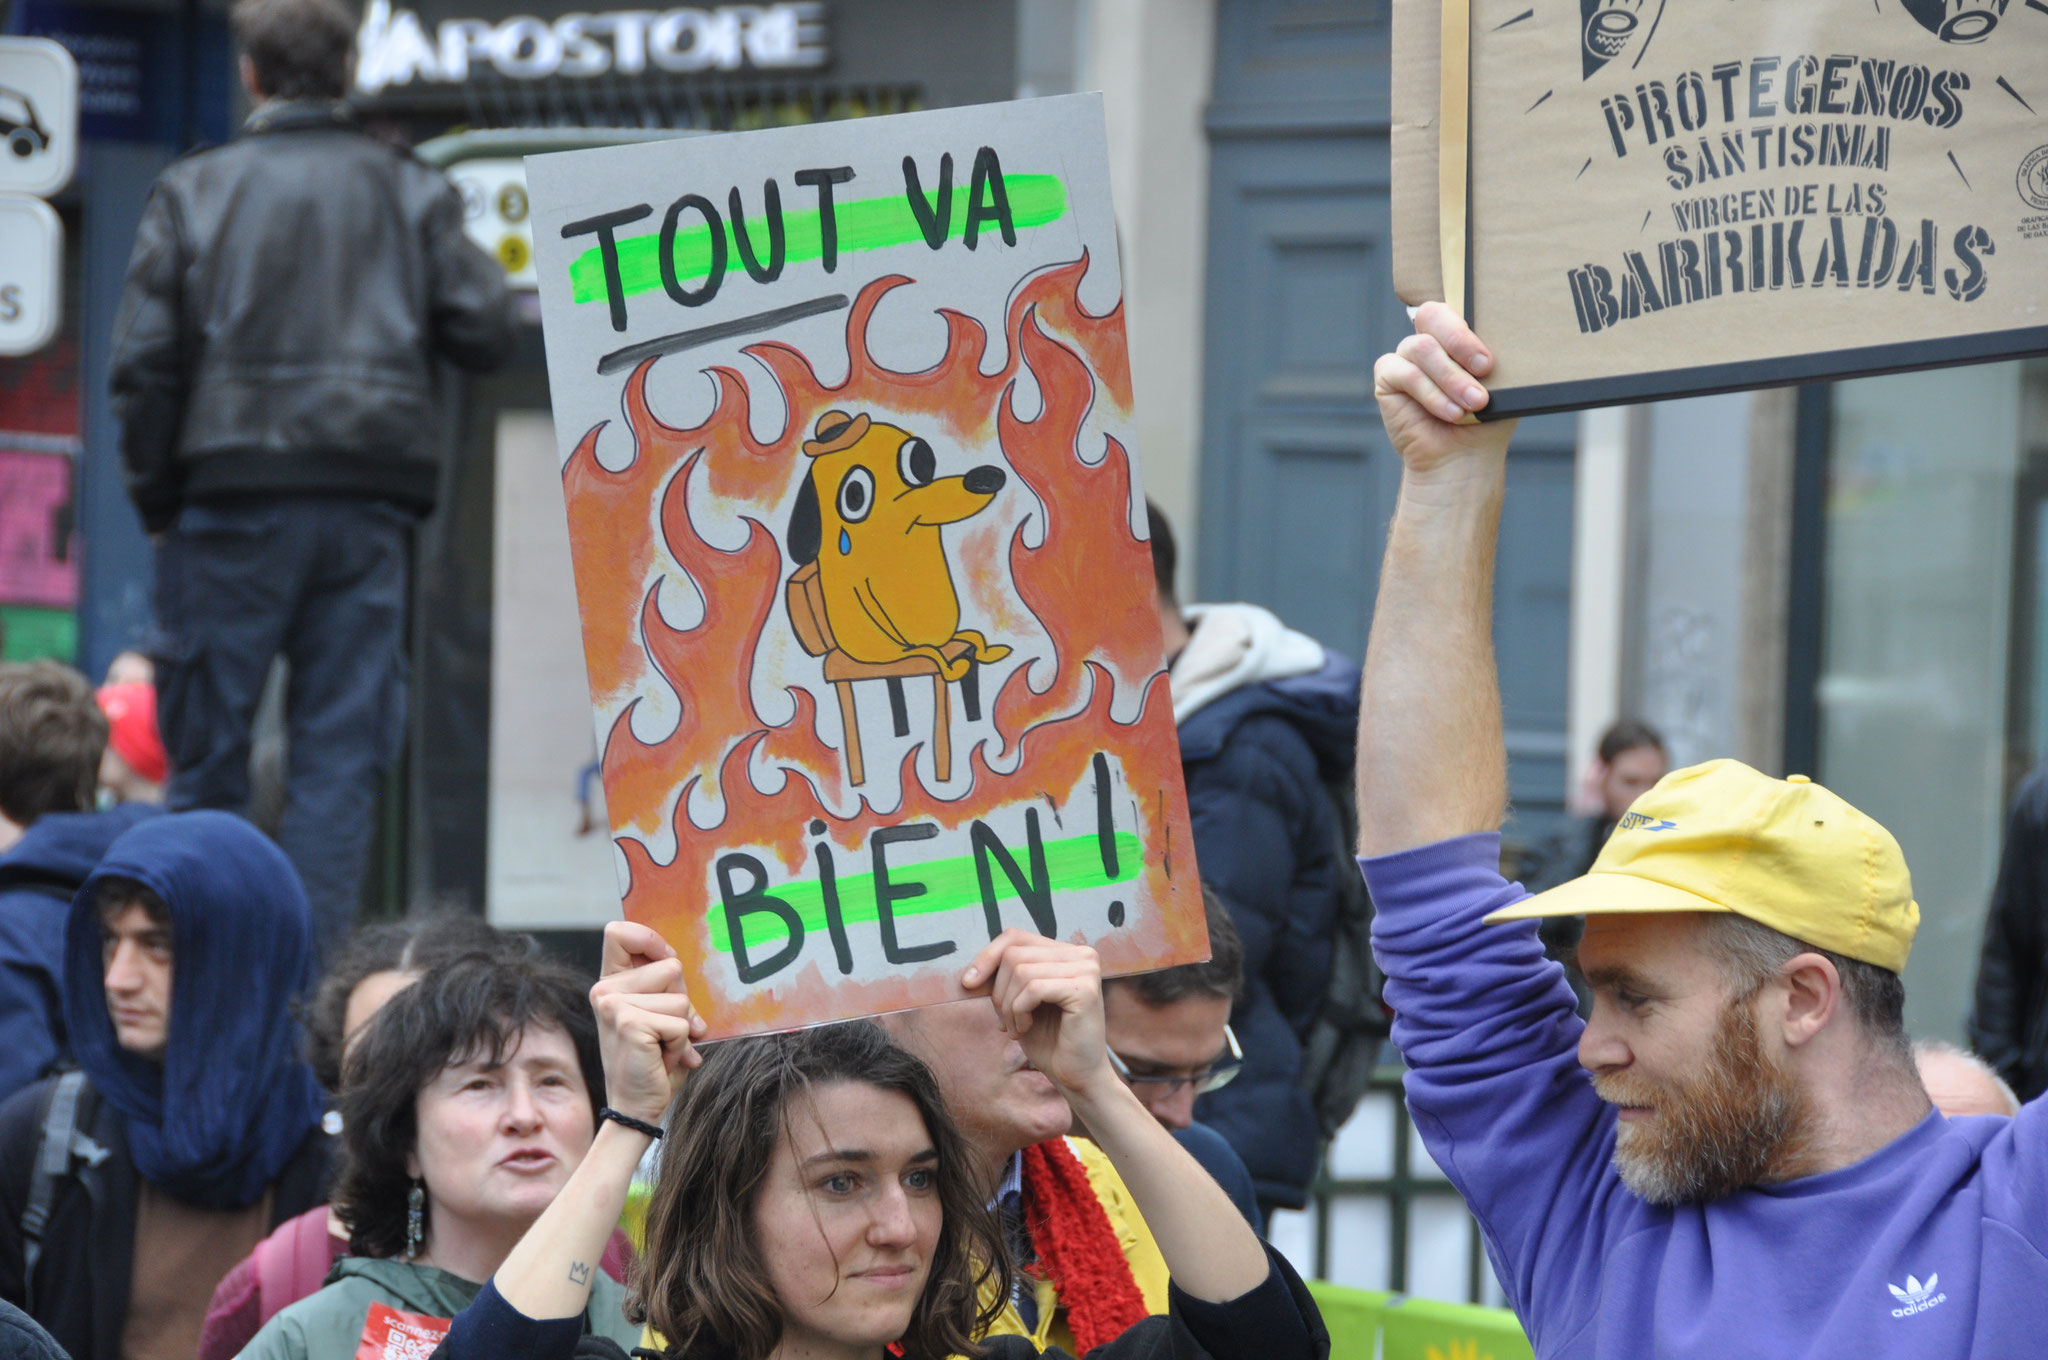 23 mars 2023, Bastille Opéra - Manifestation contre la réforme des retraites à Paris